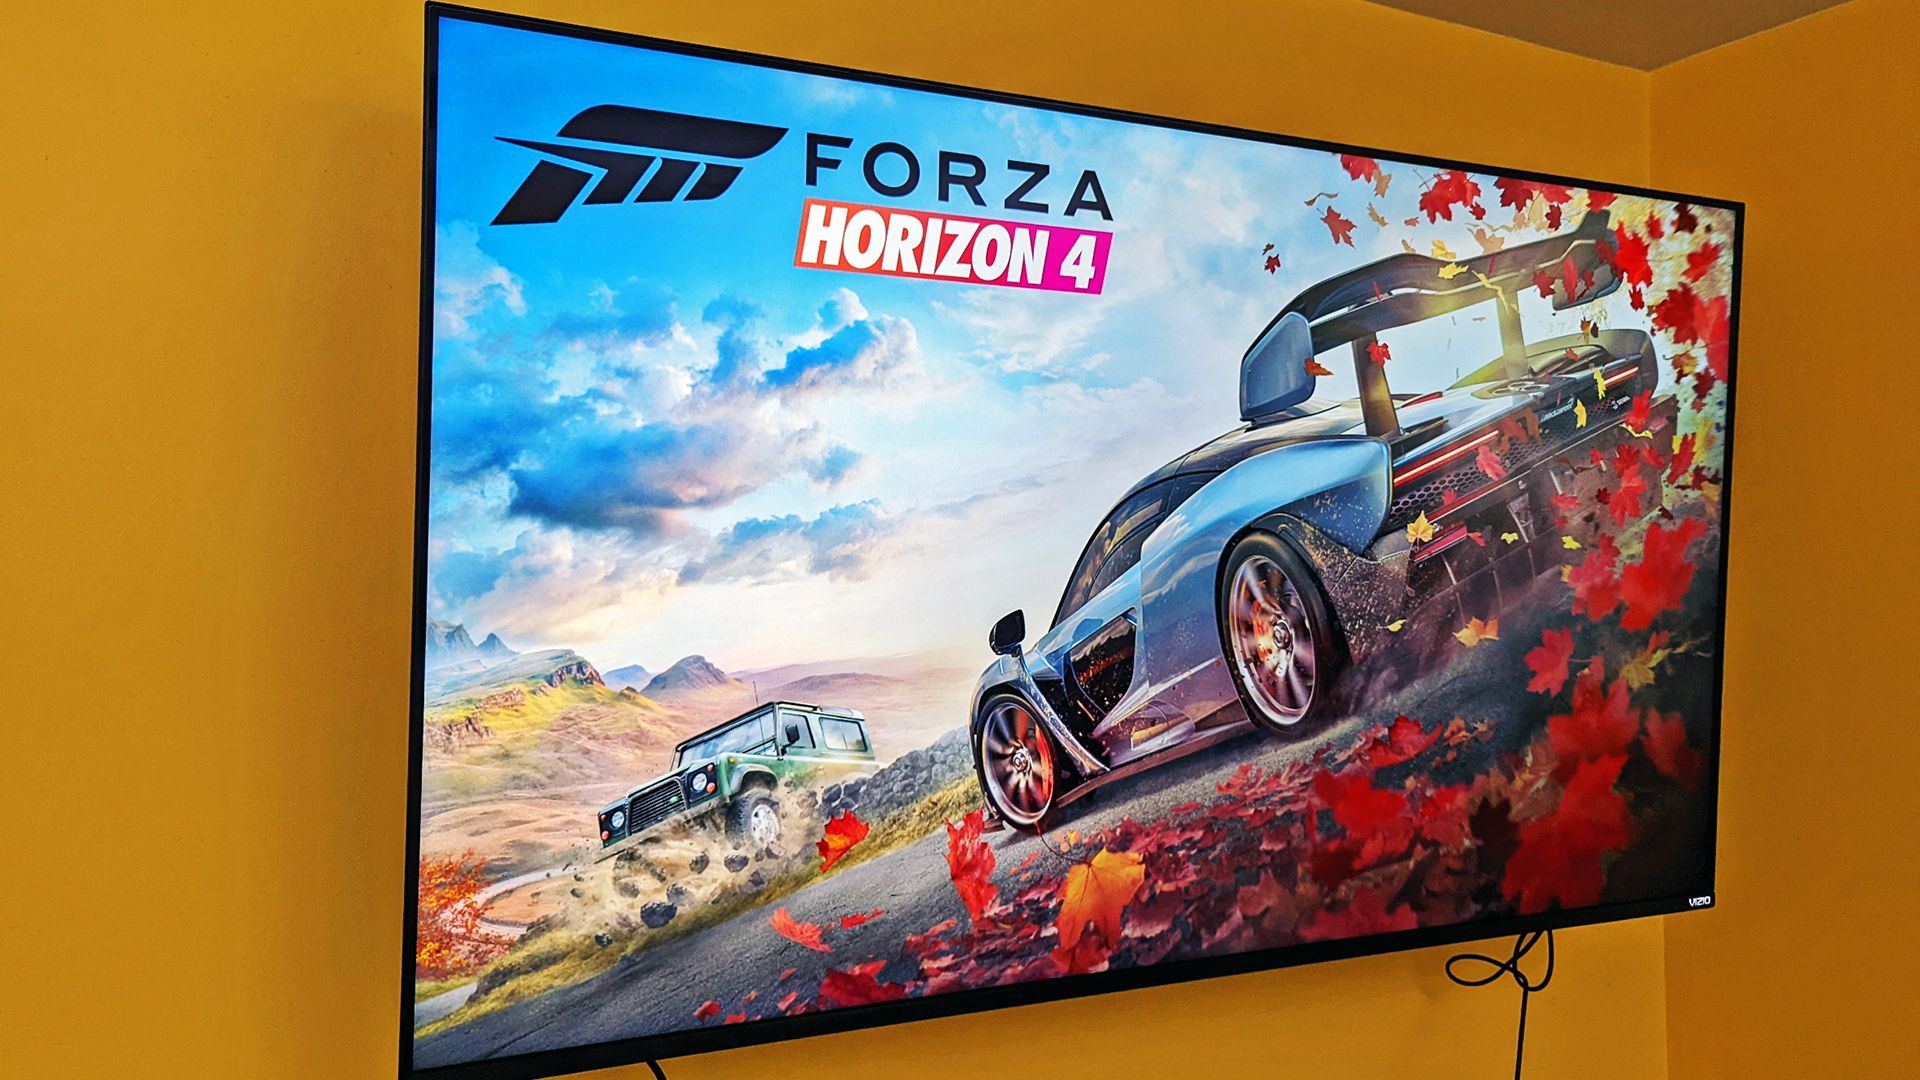 Vizio TV with Forza Horizon 4 on.